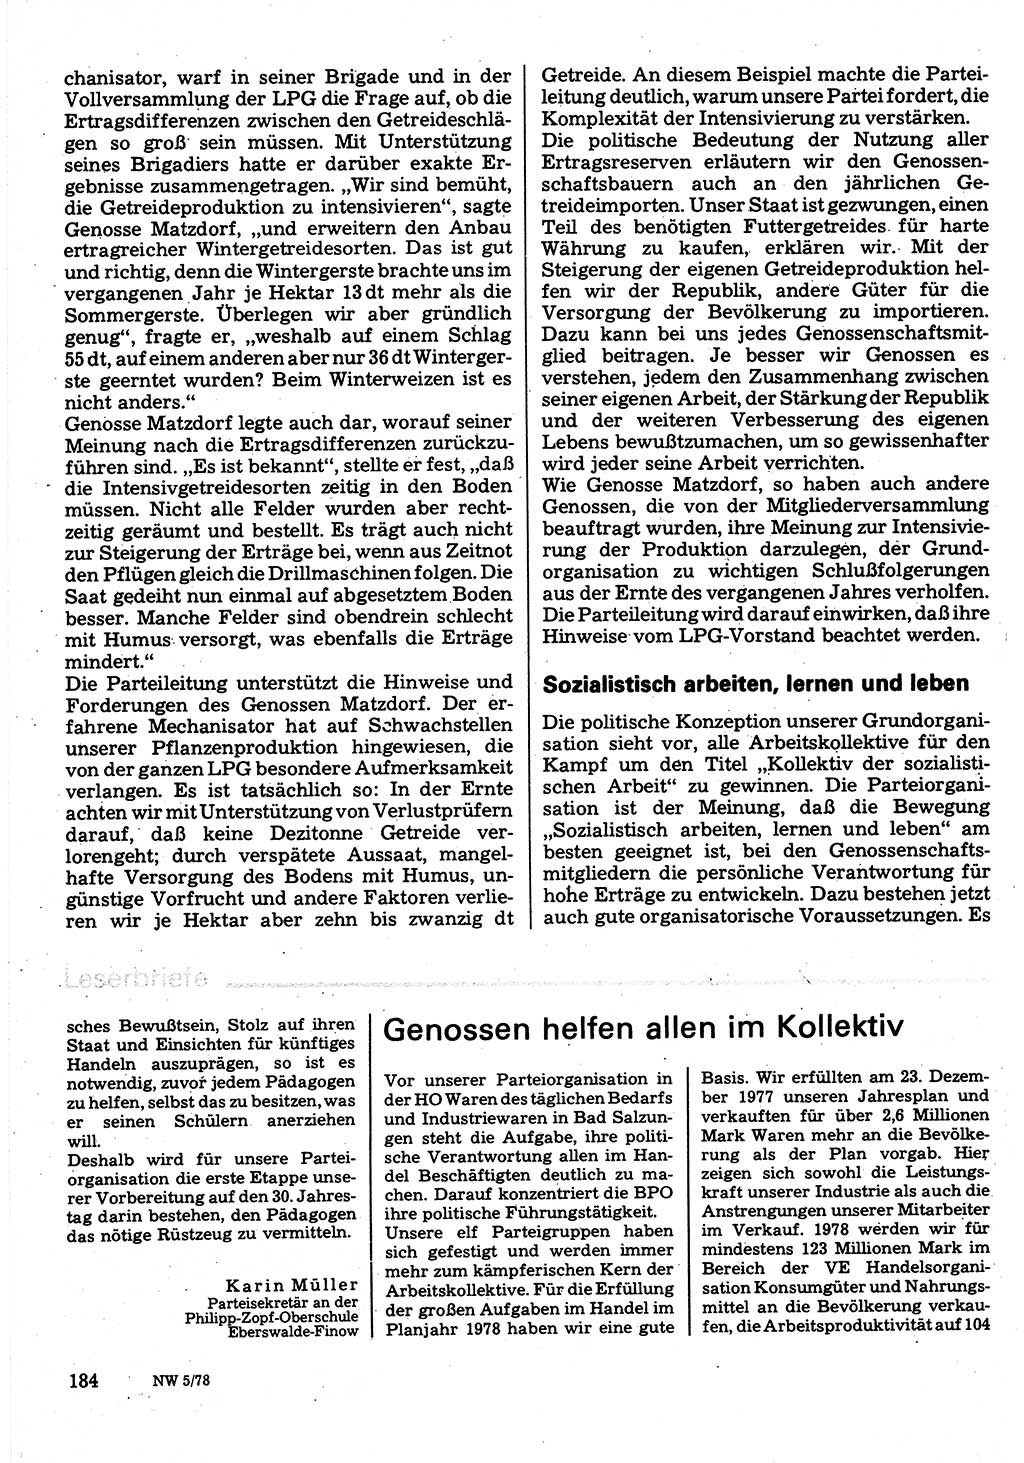 Neuer Weg (NW), Organ des Zentralkomitees (ZK) der SED (Sozialistische Einheitspartei Deutschlands) für Fragen des Parteilebens, 33. Jahrgang [Deutsche Demokratische Republik (DDR)] 1978, Seite 184 (NW ZK SED DDR 1978, S. 184)